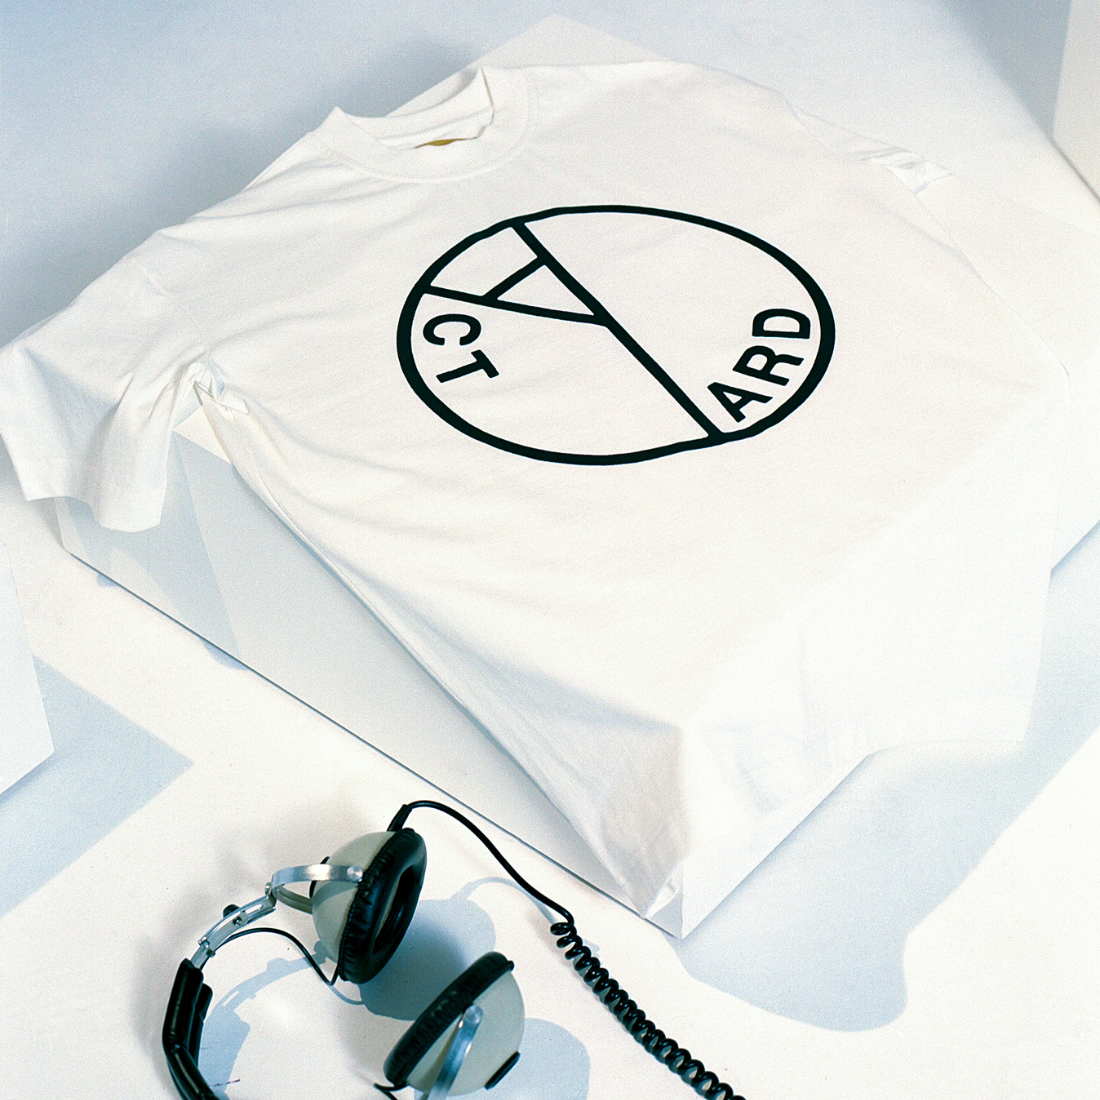 Where’s My Utopia?: CD, Cassette, Off-White T-shirt + Signed Art Card